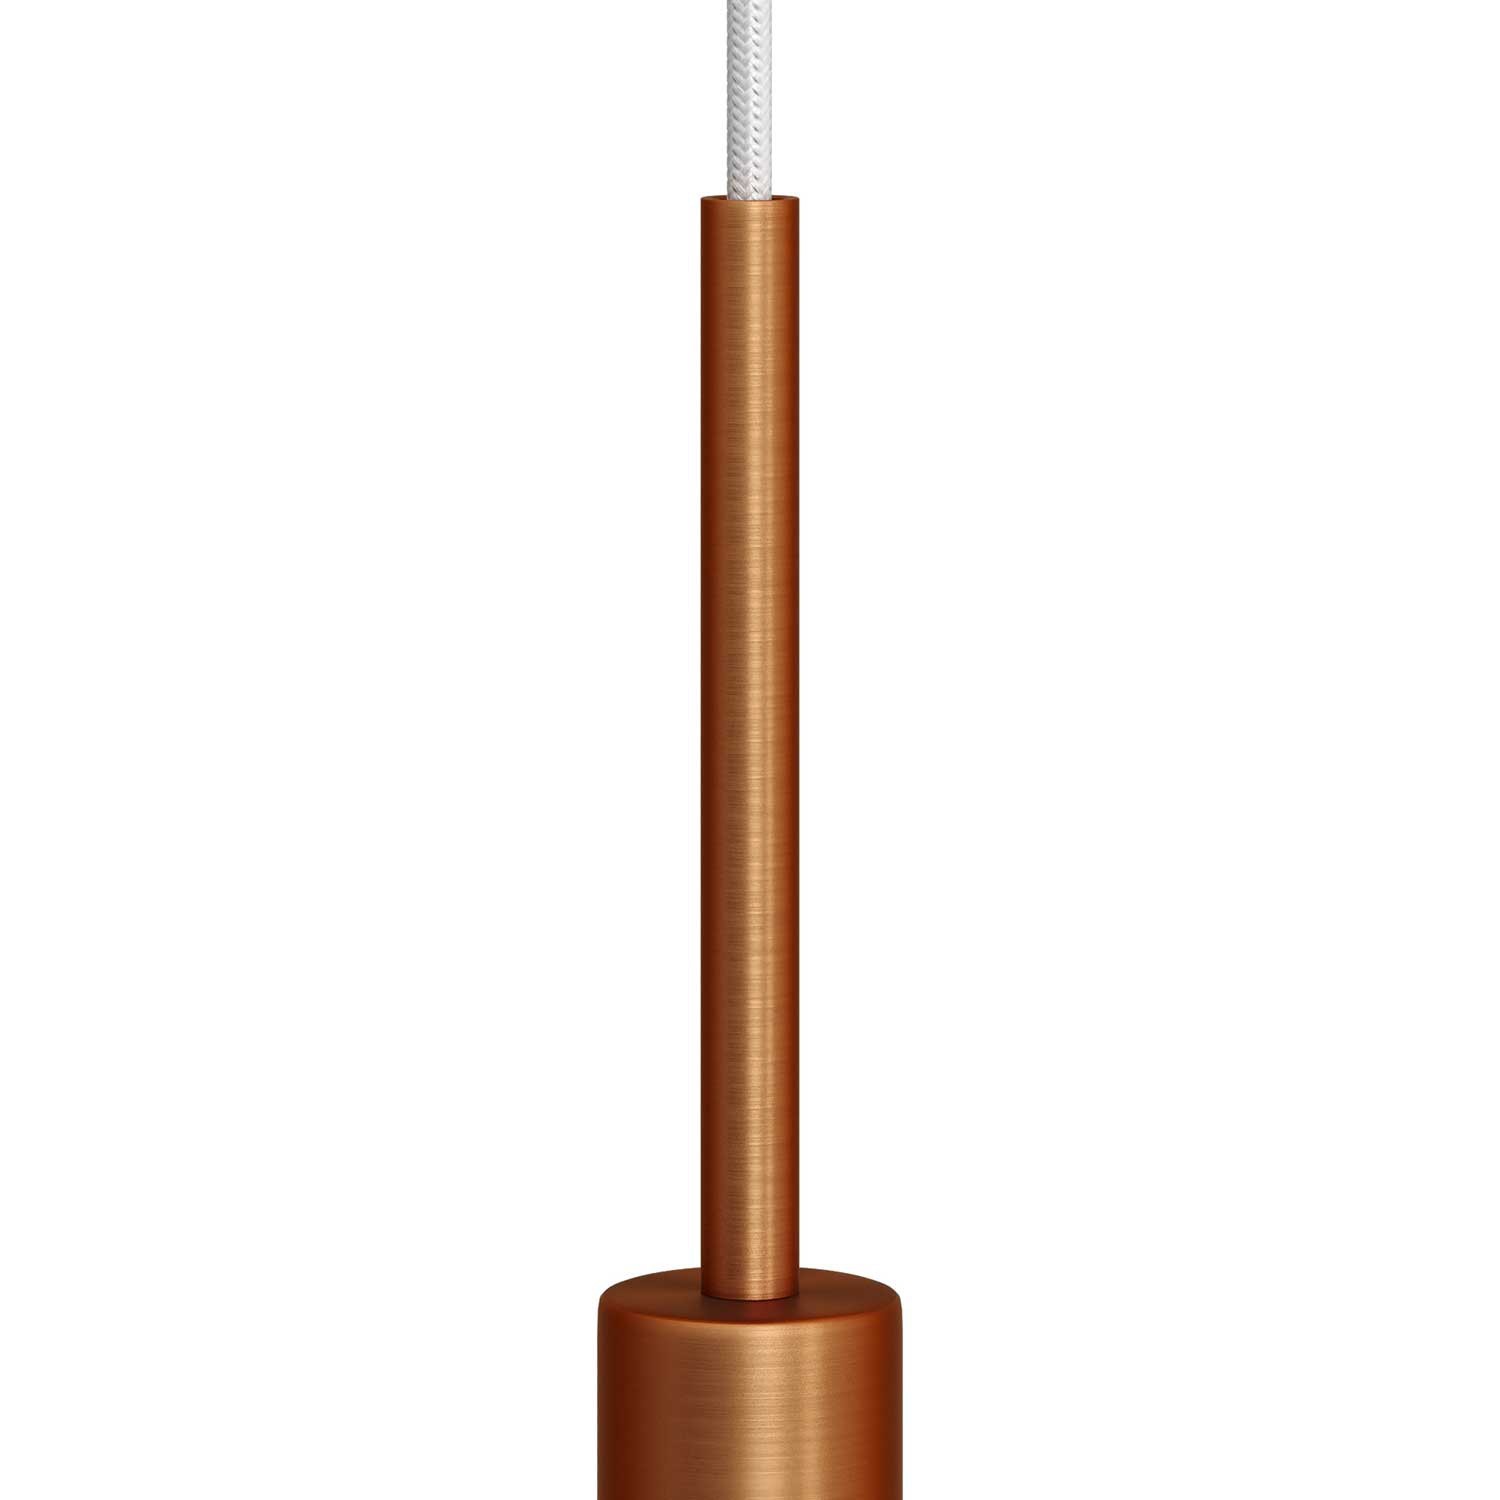 Prensaestopa metálico redondo, longitud 15 cm, acabado, completo de tubo roscado, tuerca y arandela